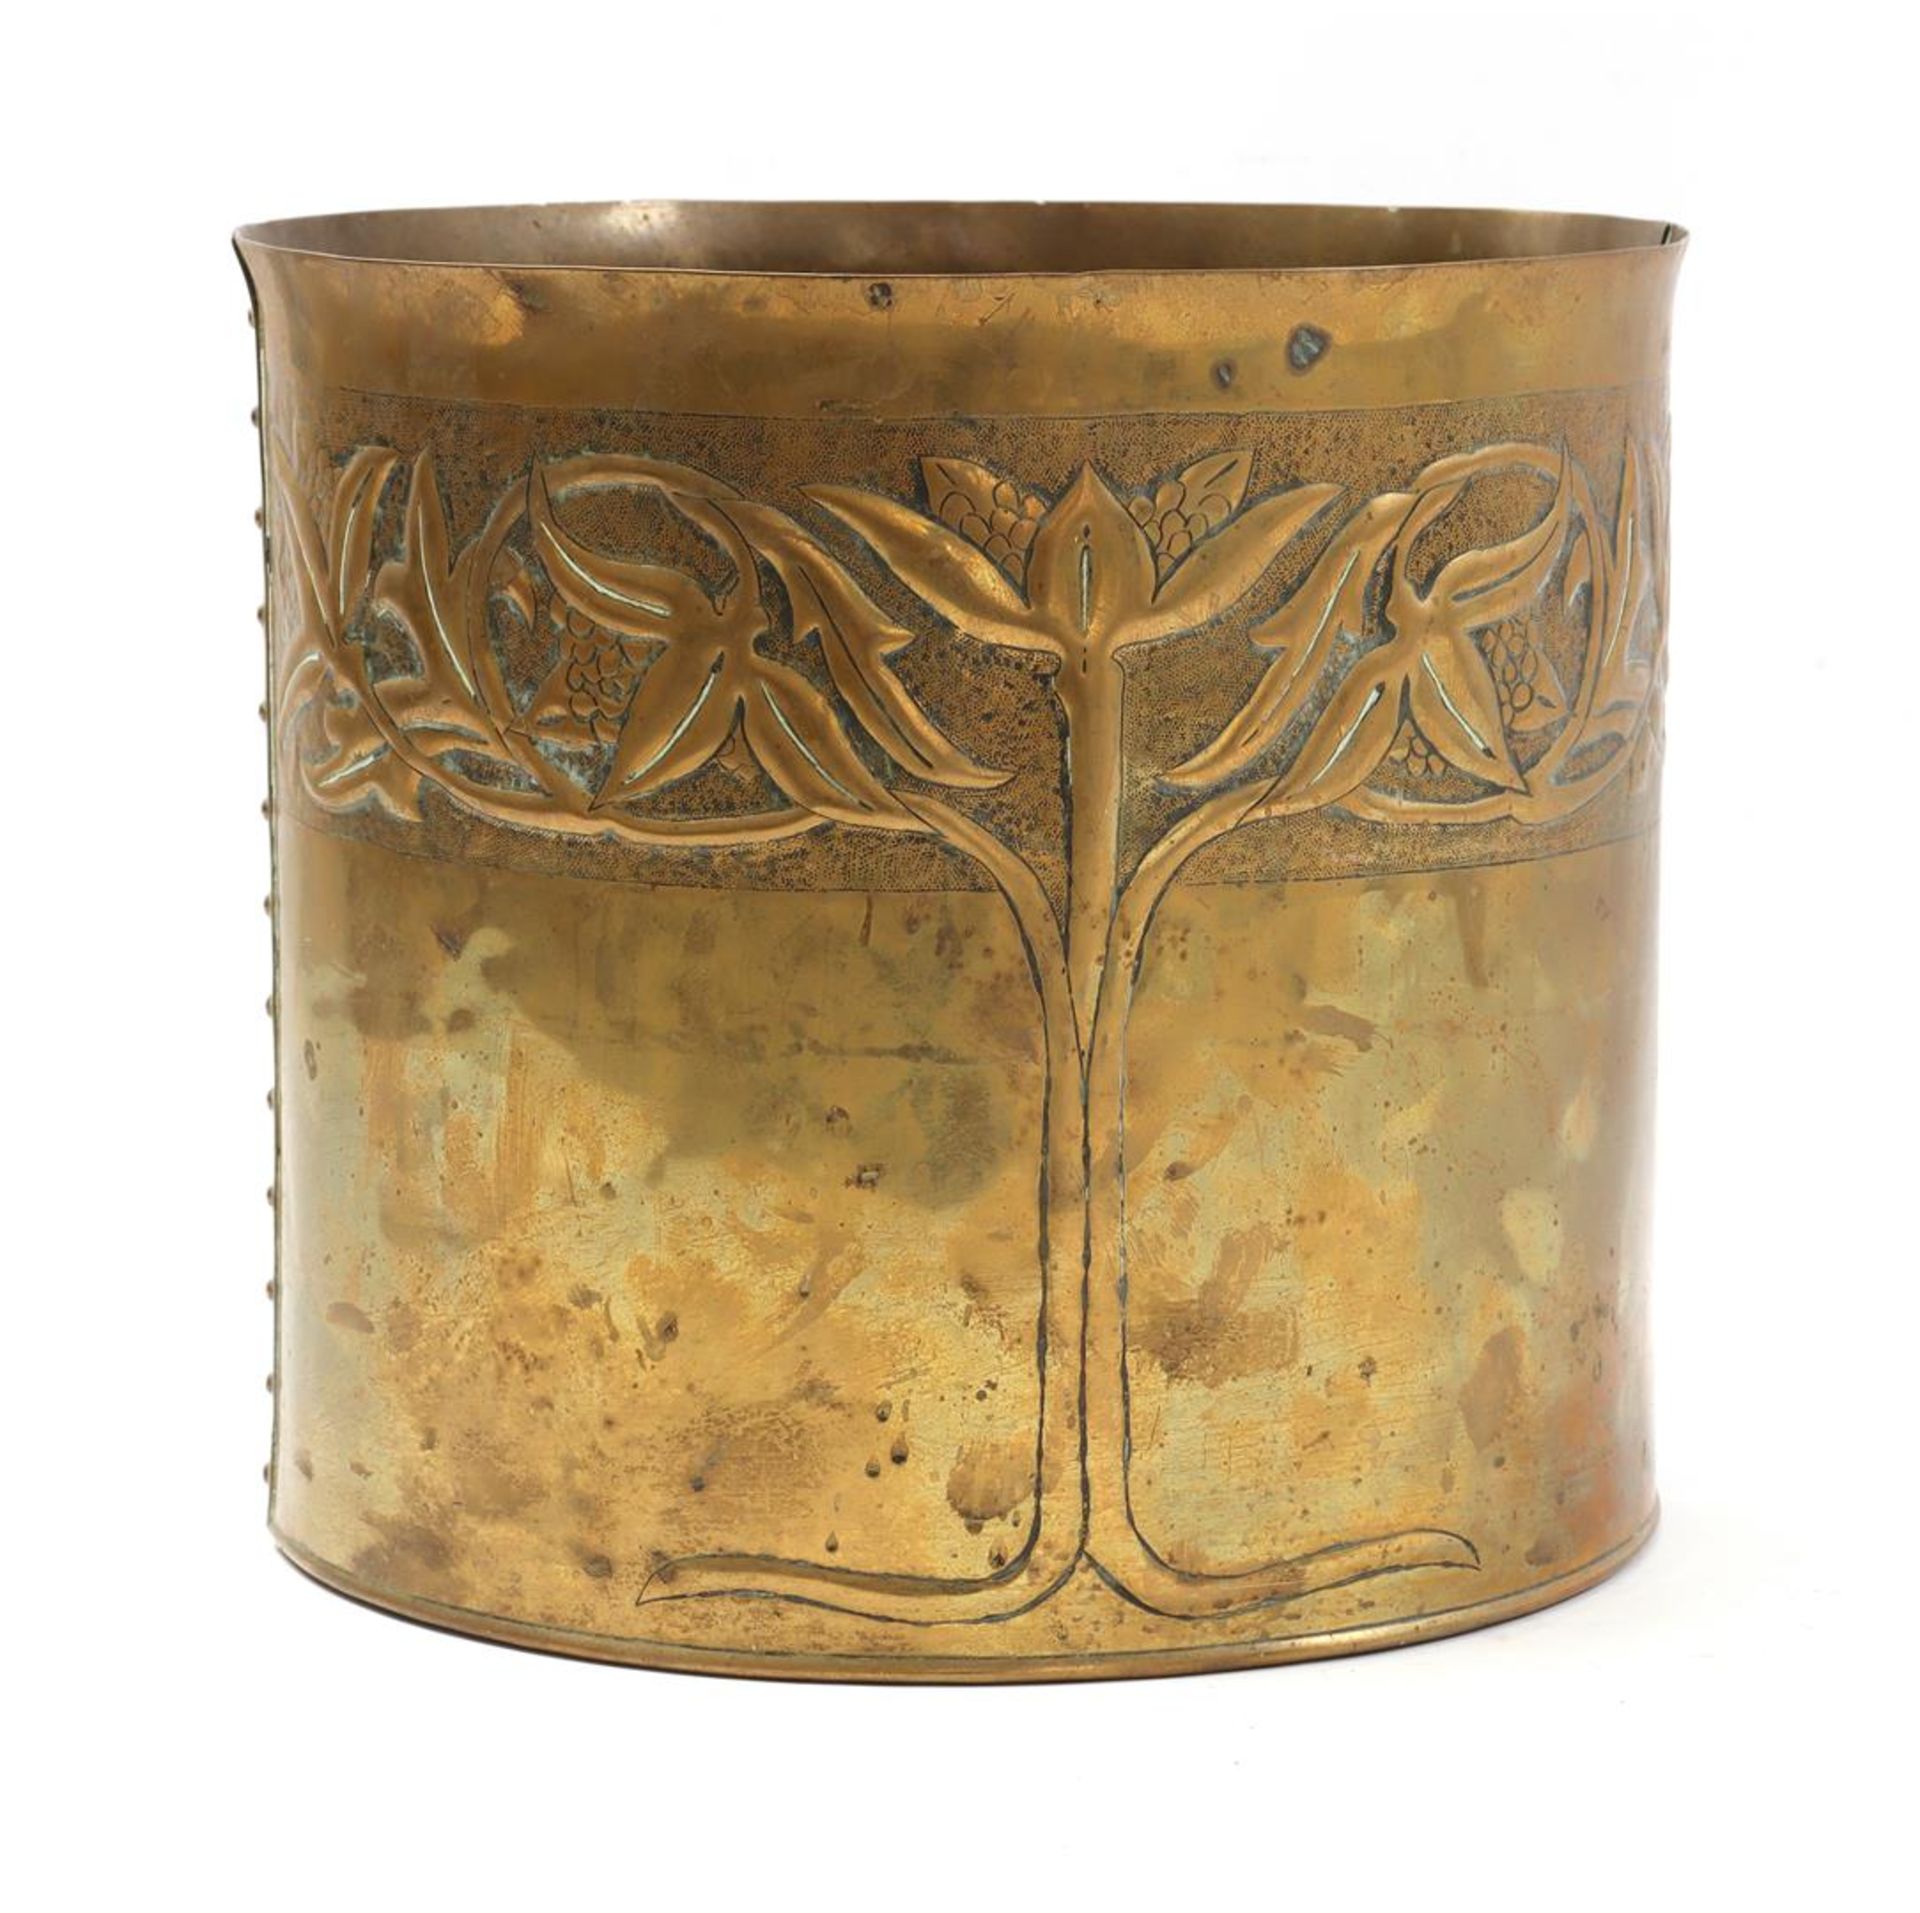 Copper cache pot